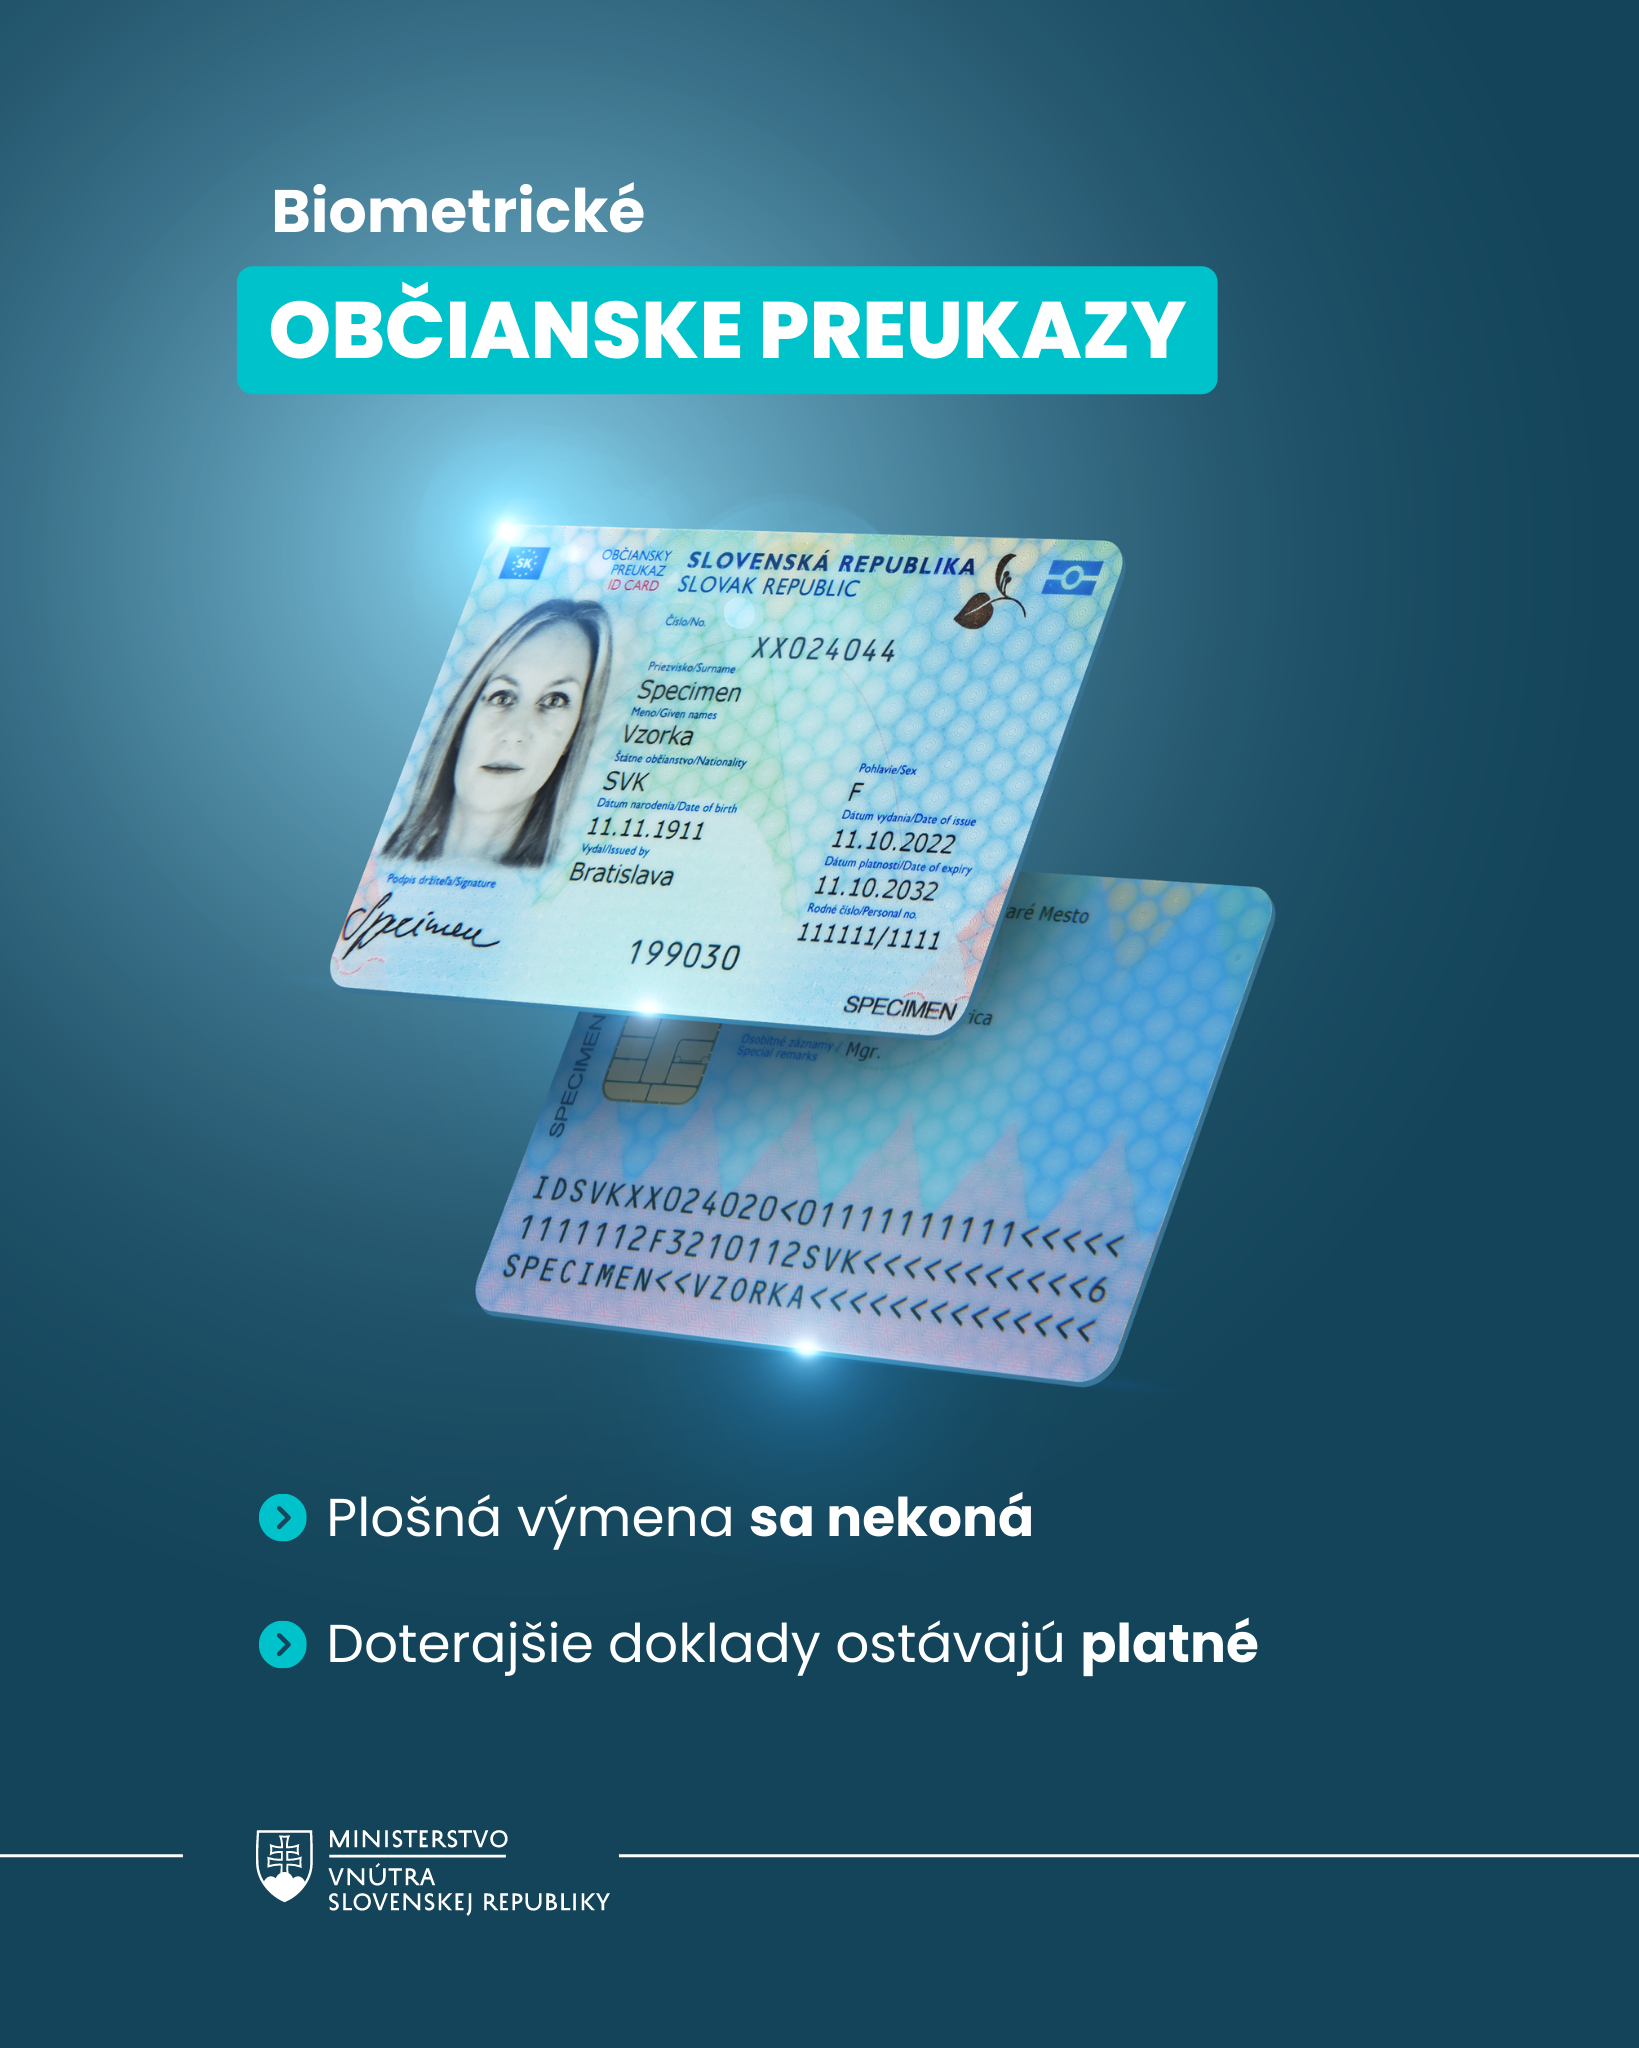 Biometrický občiansky preukaz - infografika